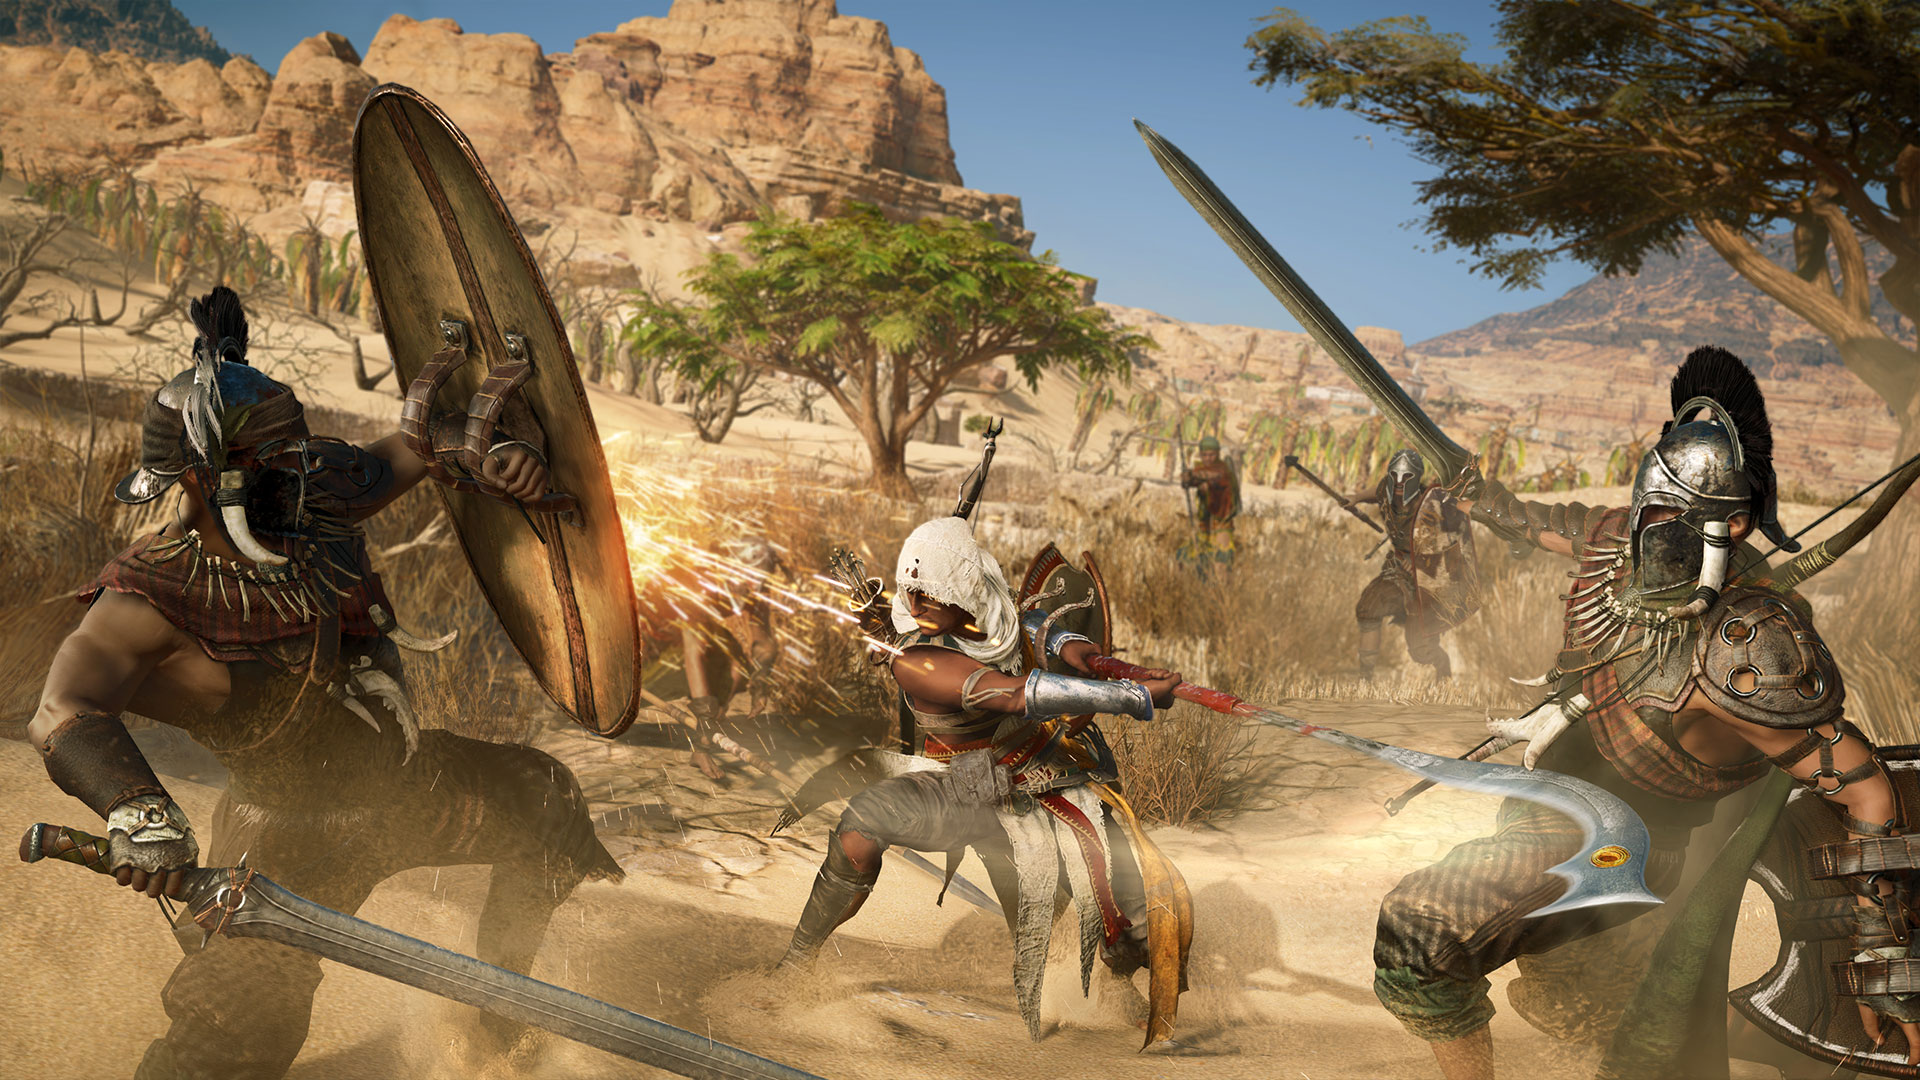 Immagine pubblicata in relazione al seguente contenuto: Gameplay trailer in 4K e screenshots in Full HD di Assassin's Creed Origins | Nome immagine: news26543_Assassin-s-Creed-Origins-Screenshot_5.jpg